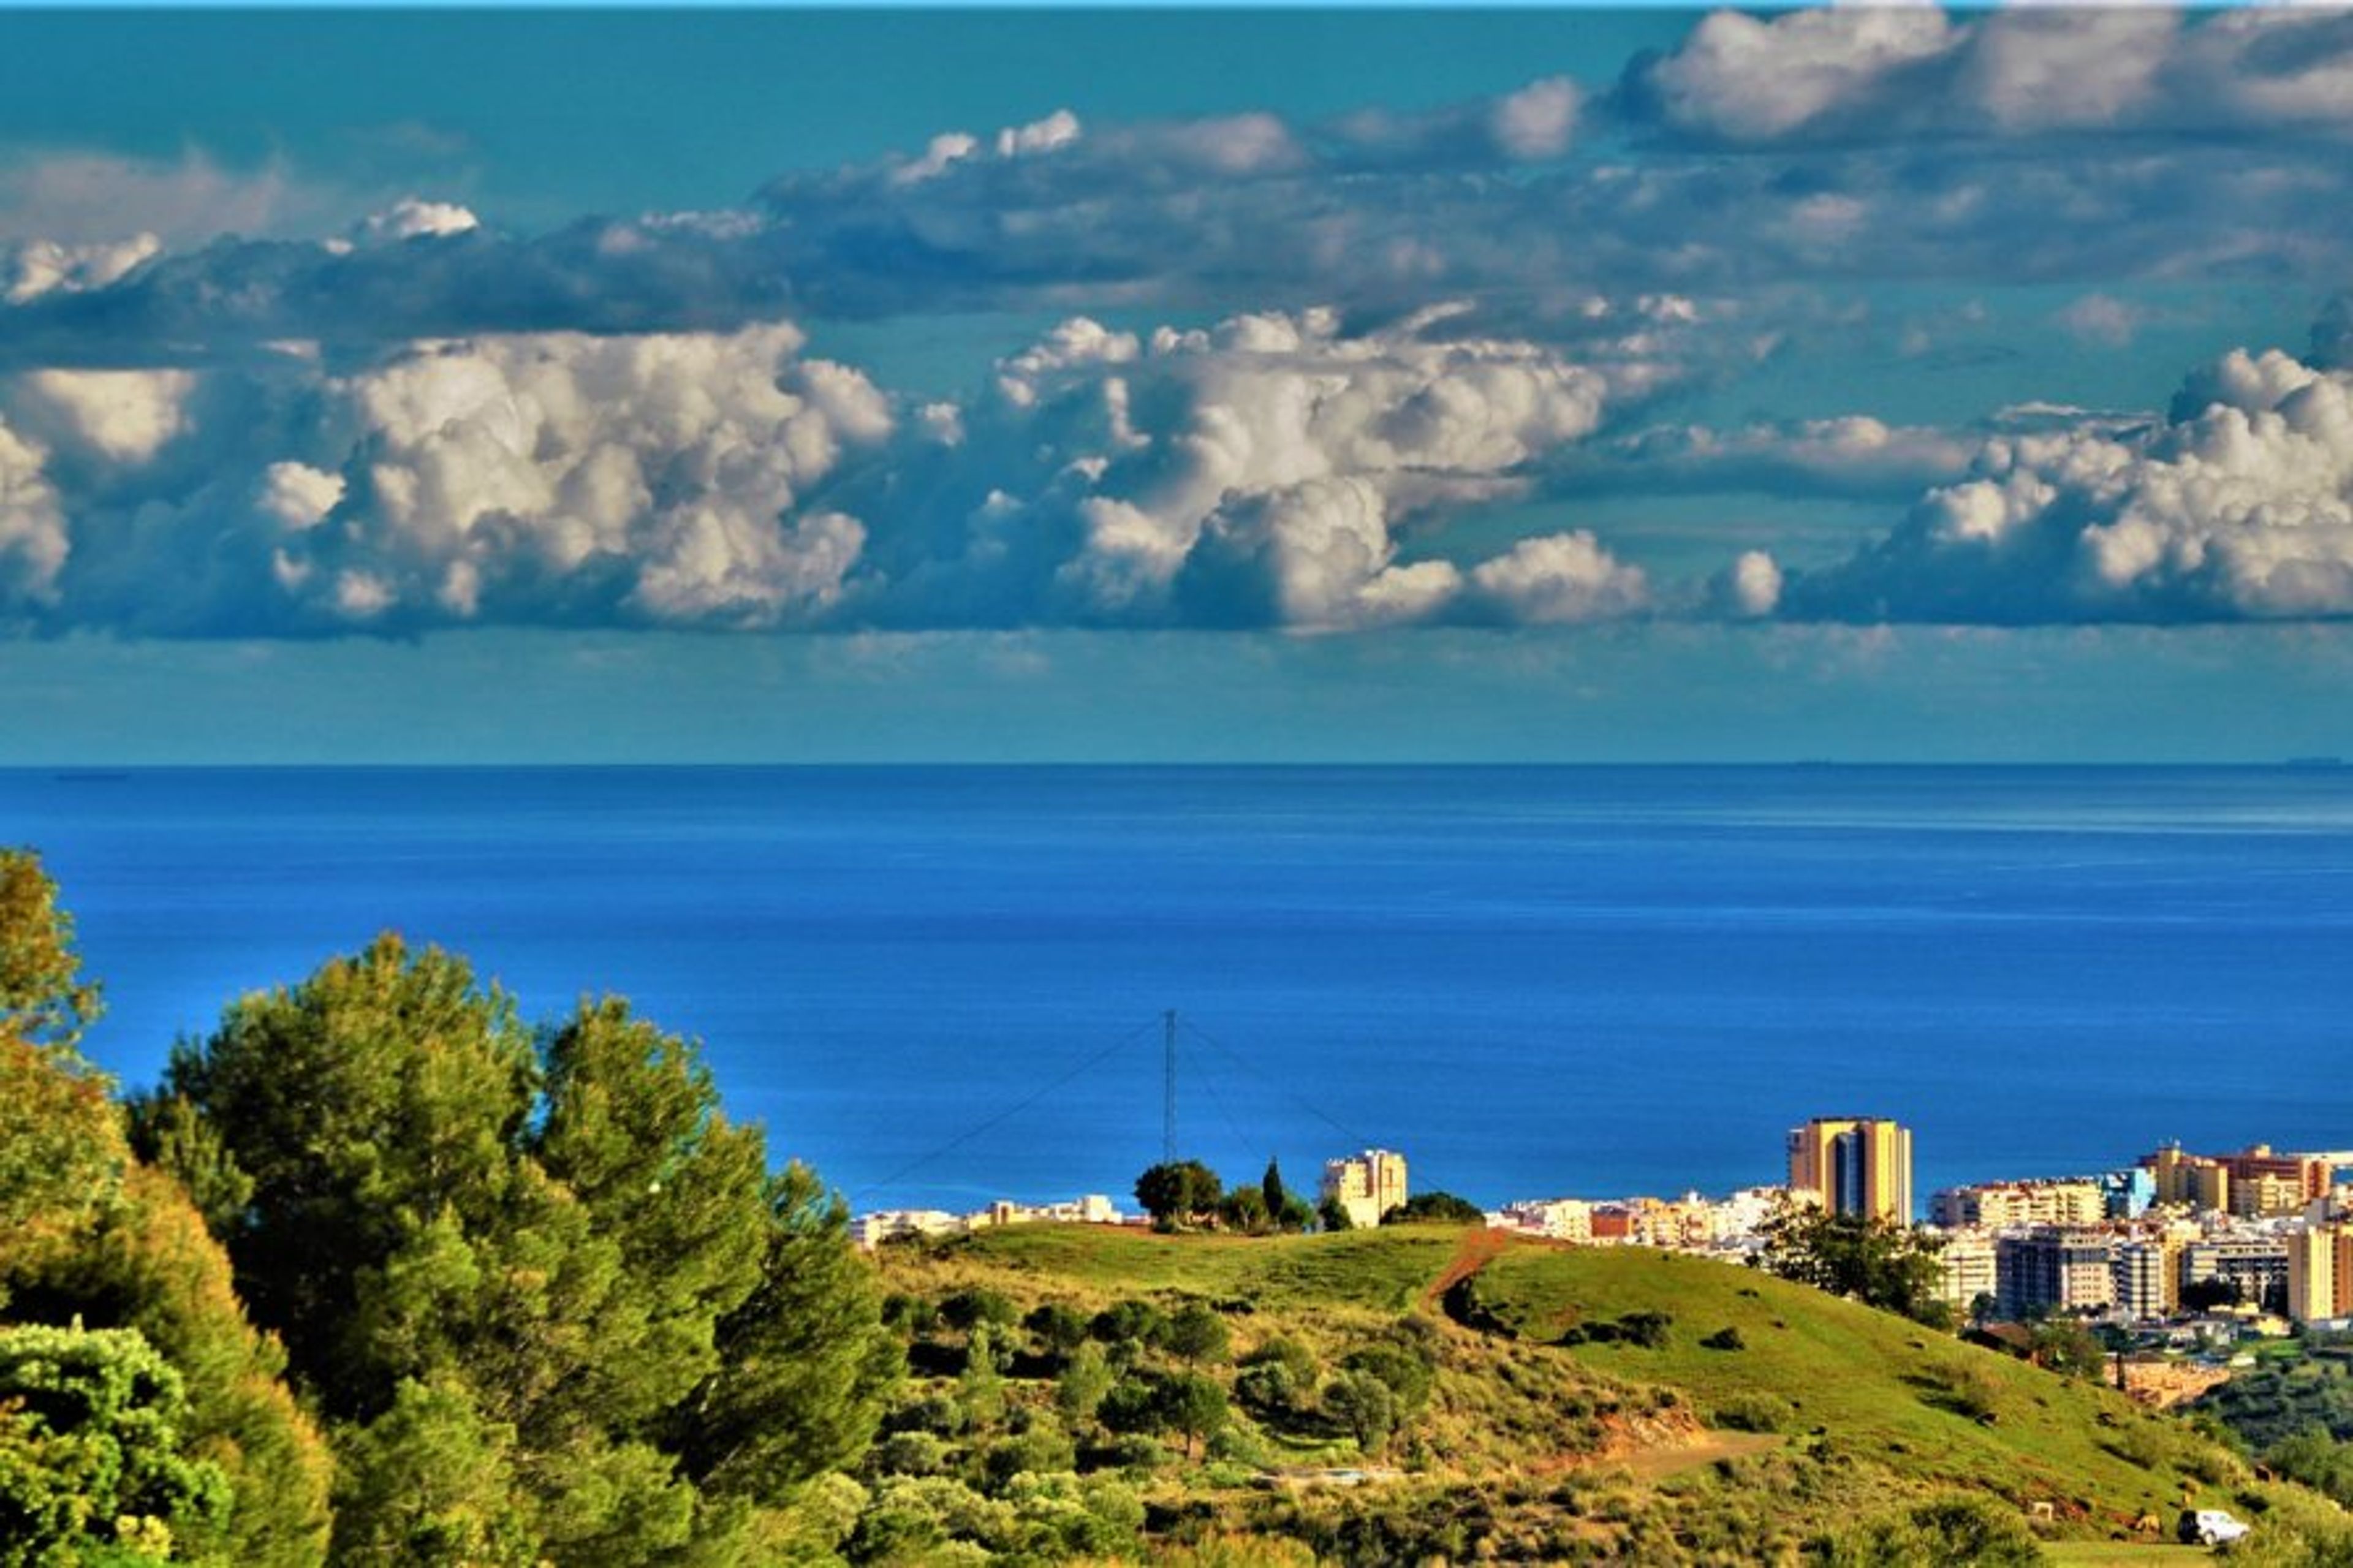 Sea views to Costa del Sol, Fuengirola, Malaga.